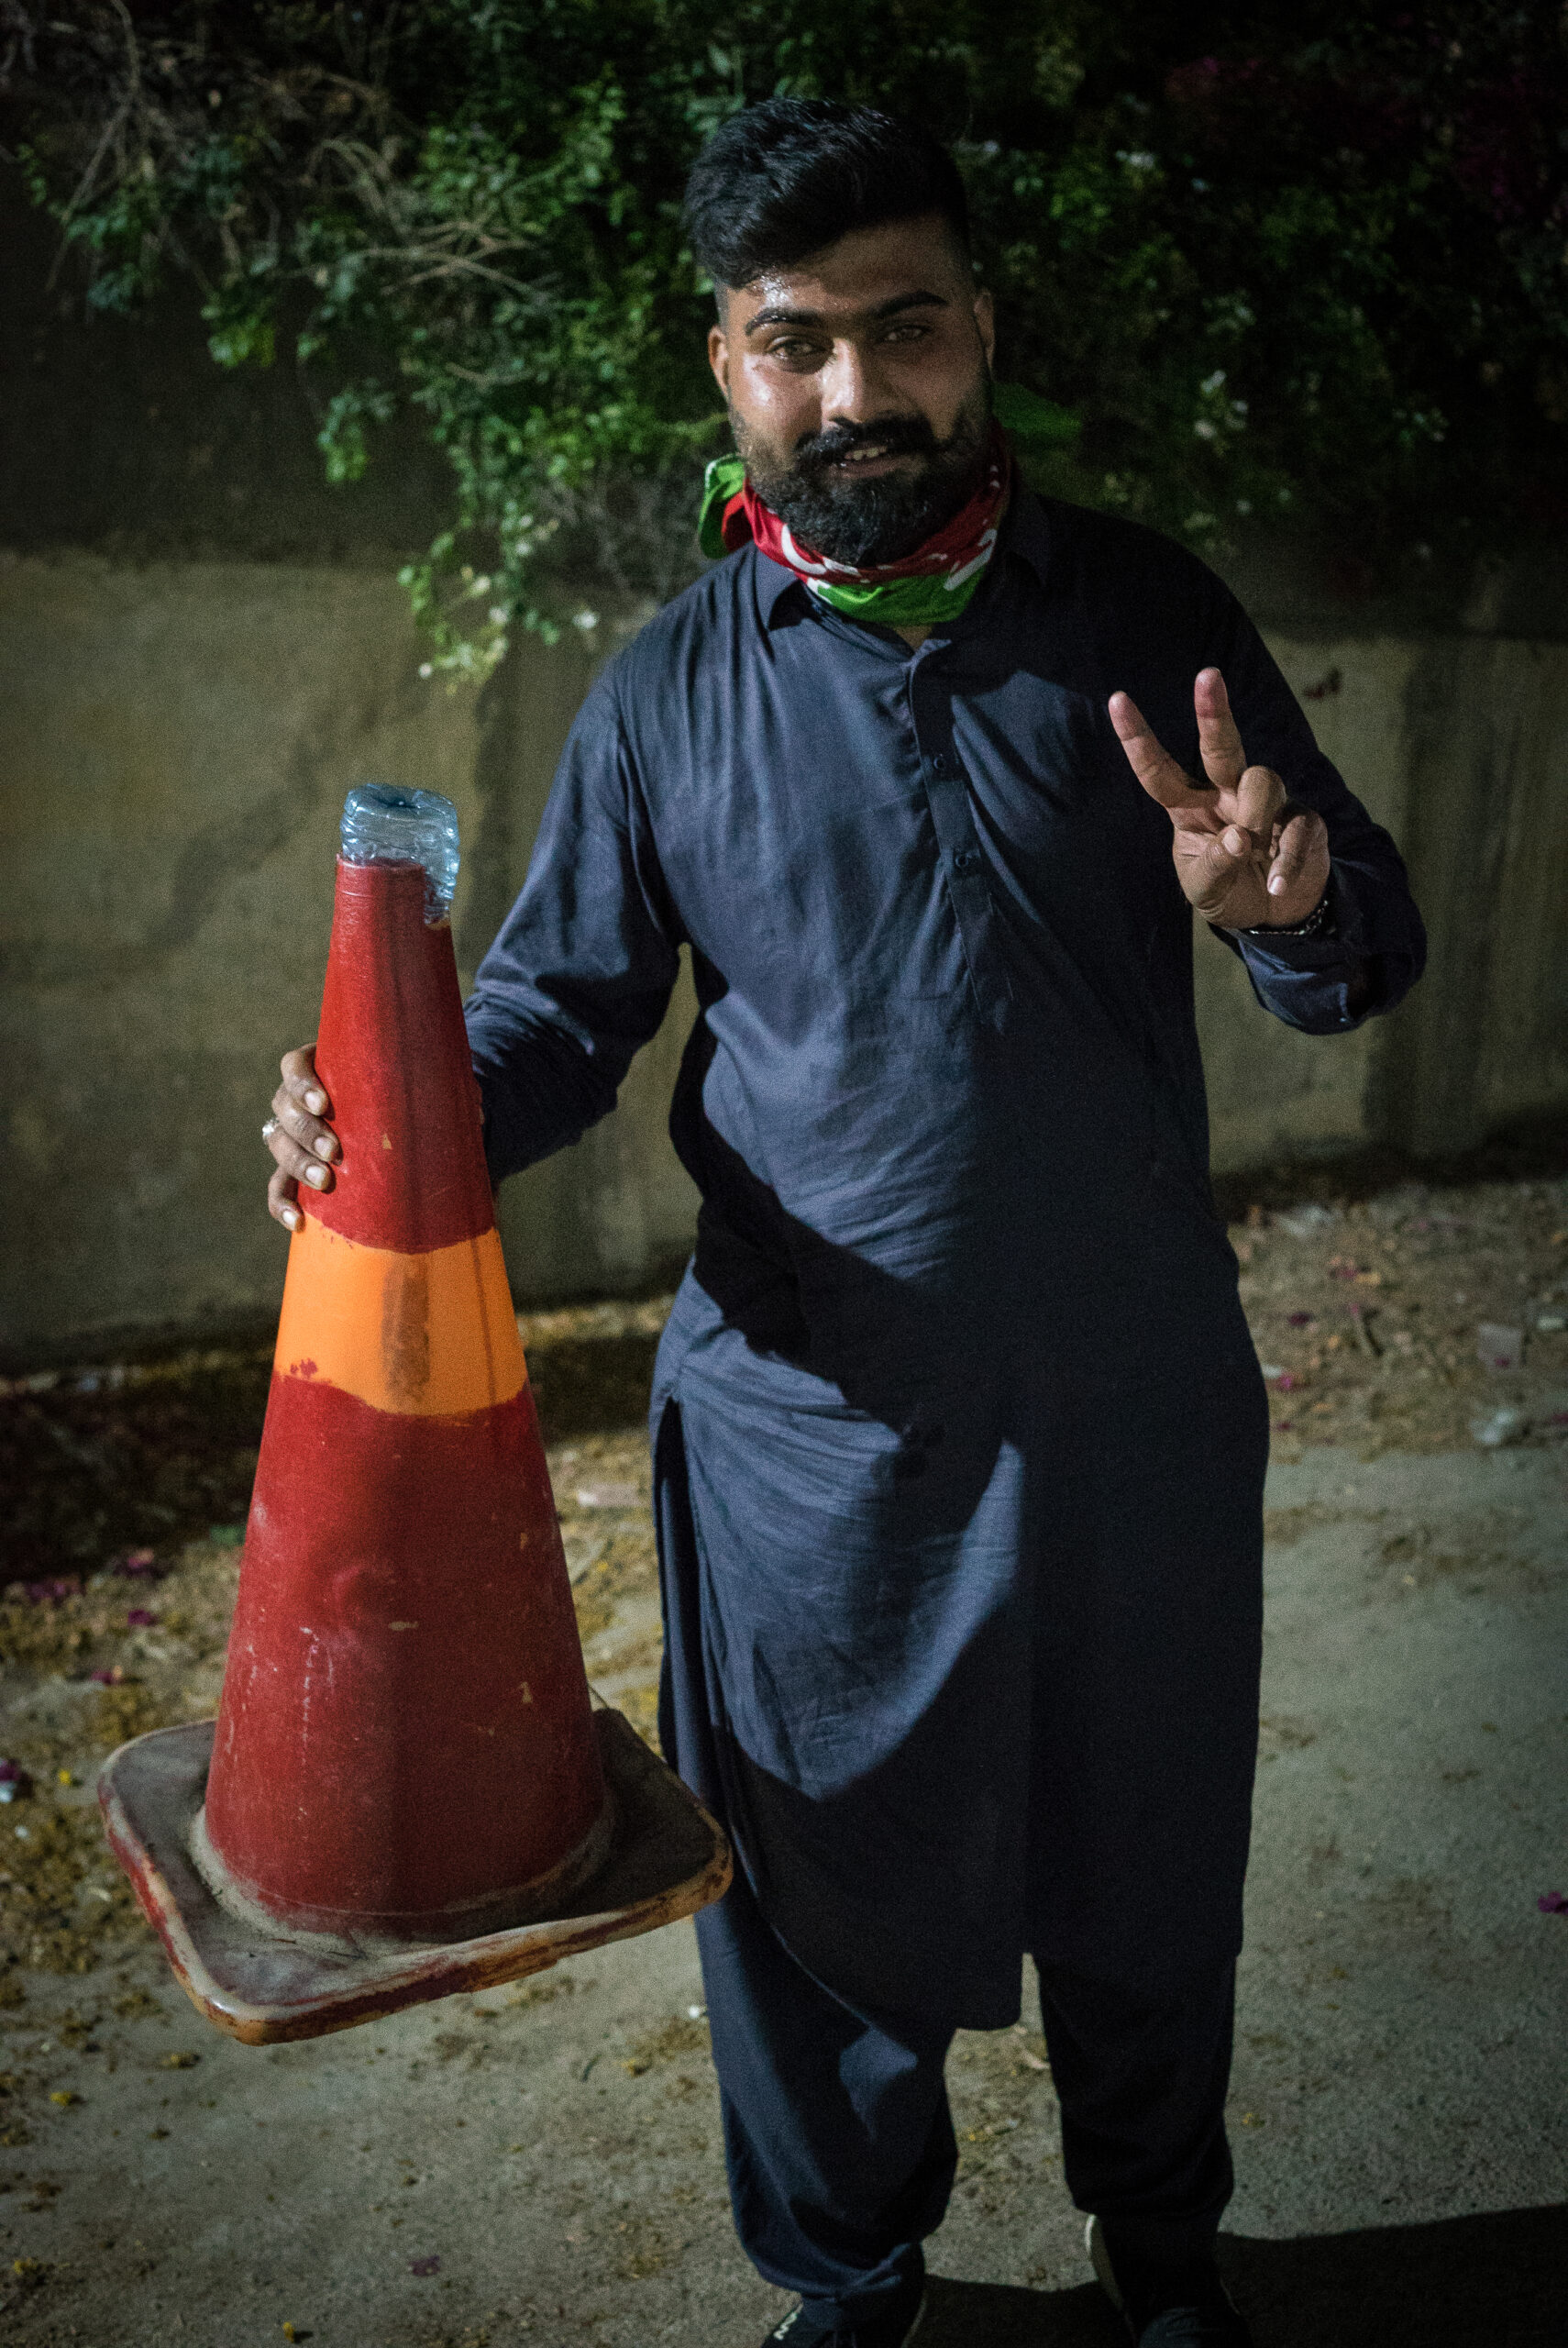 Simpatizante del PTI llevando un cono de tráfico casero para sofocar los perdigones de gas lacrimógeno, Karachi, 9 de mayo. © Laurent Gayer